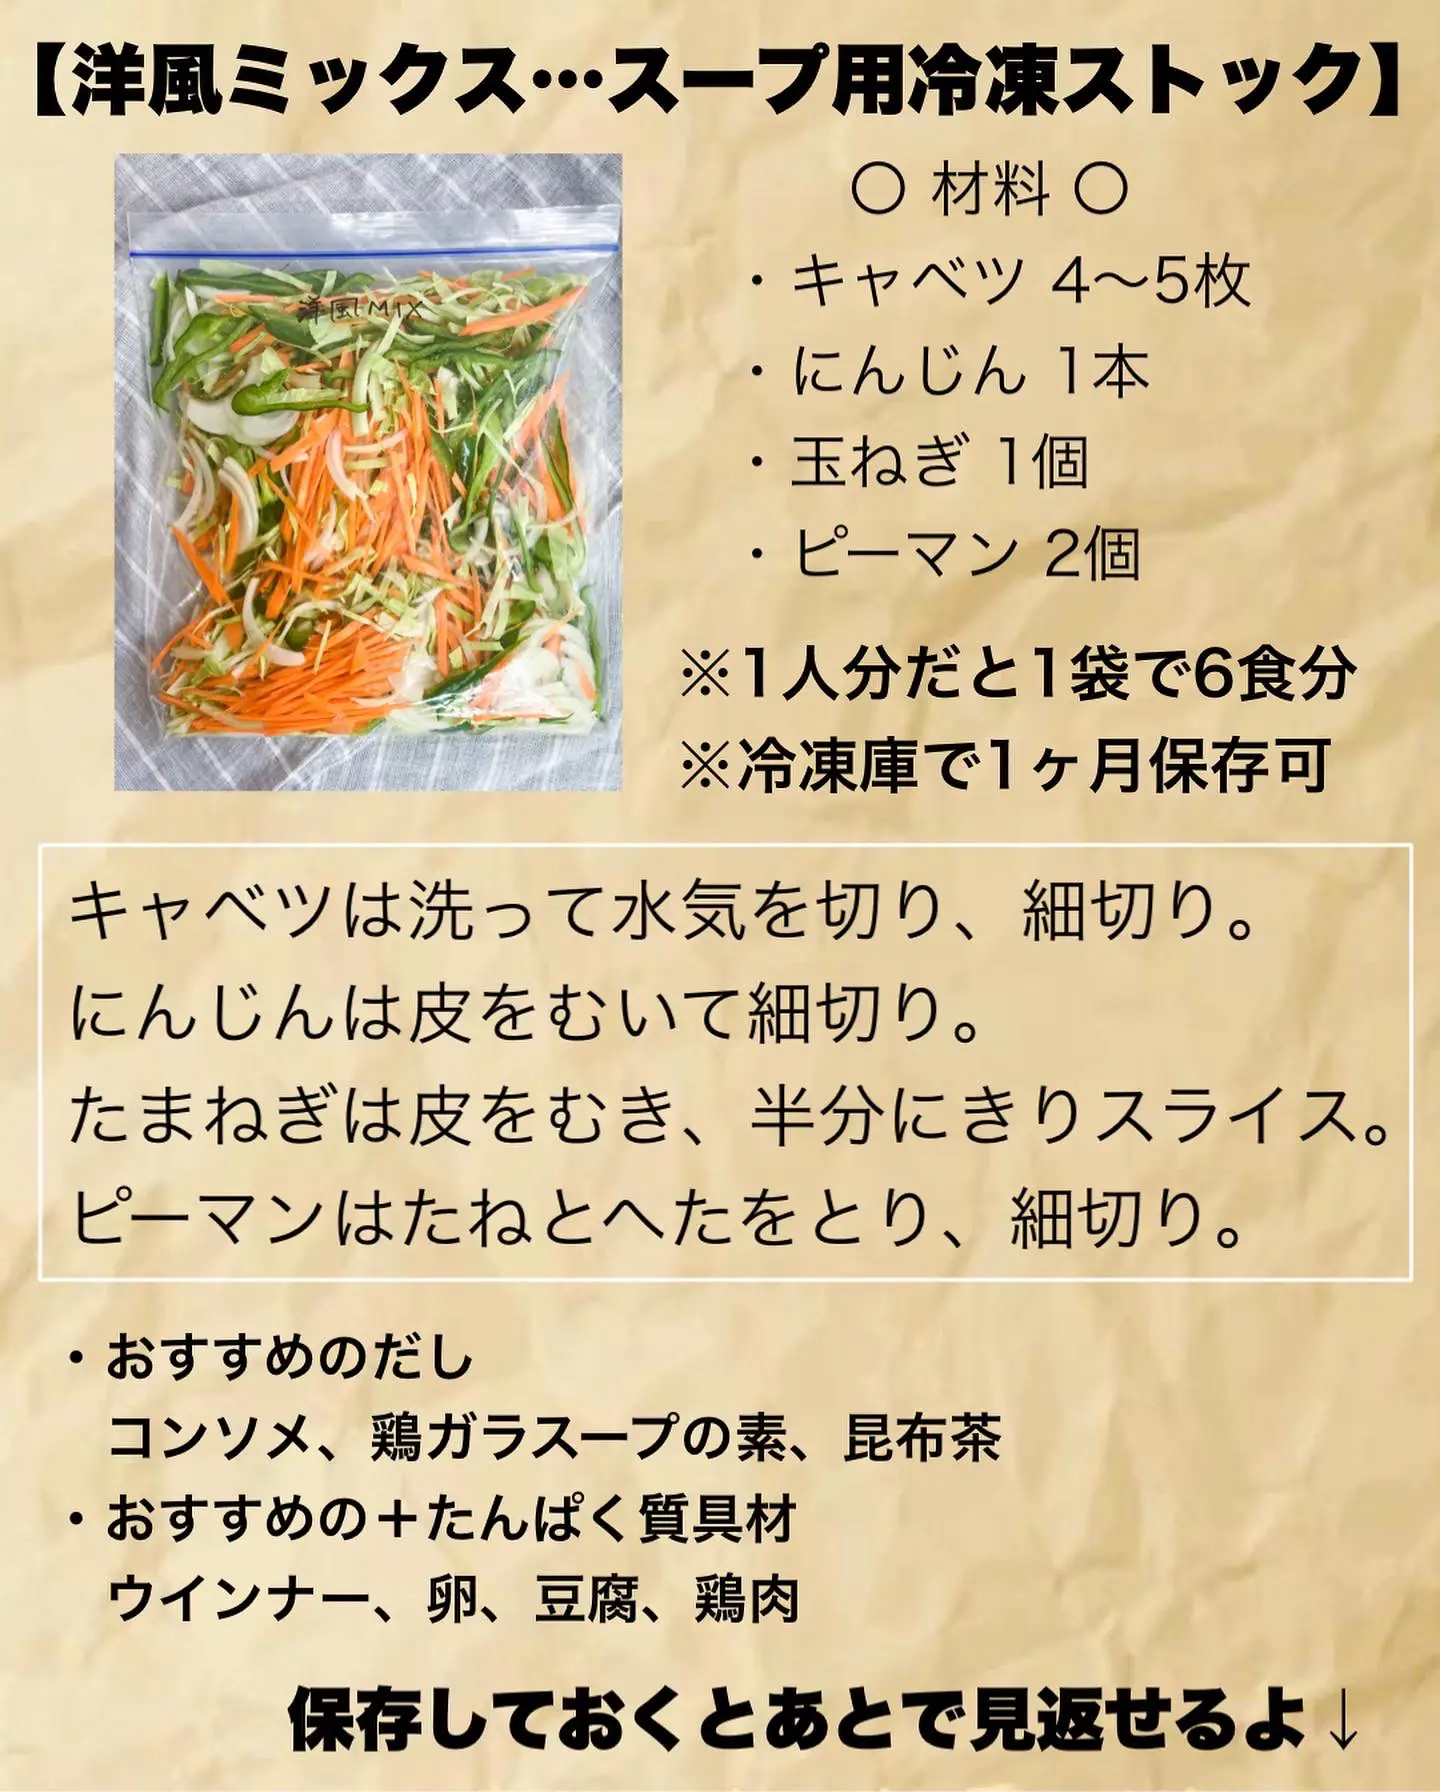 【冷凍ストック5選】スープ用野菜ストックで日頃のごはん作りを時短に⏰の画像 (2枚目)